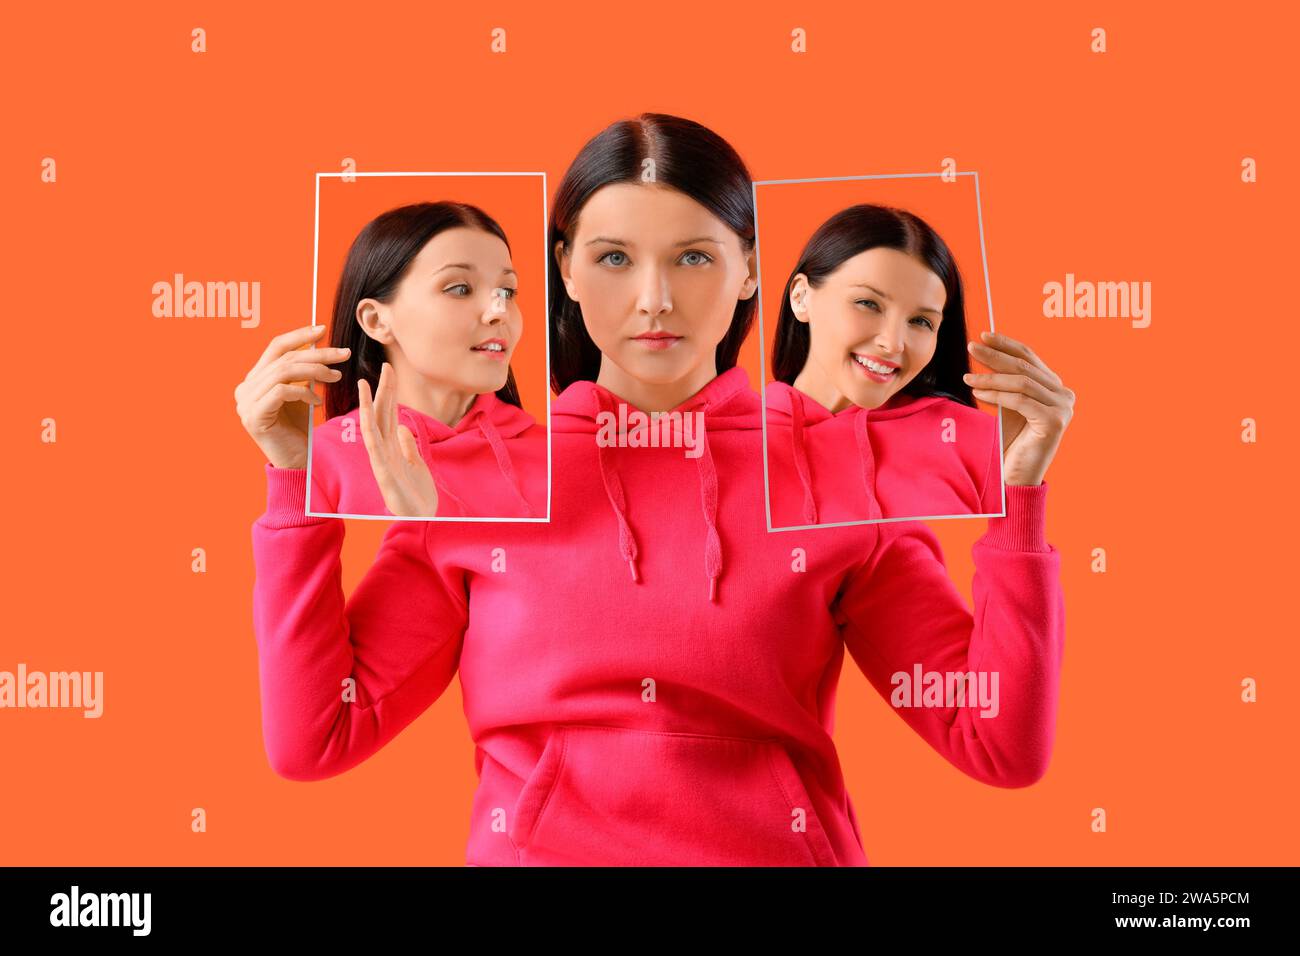 Jeune femme tenant des affiches avec des émotions différentes sur fond orange Banque D'Images